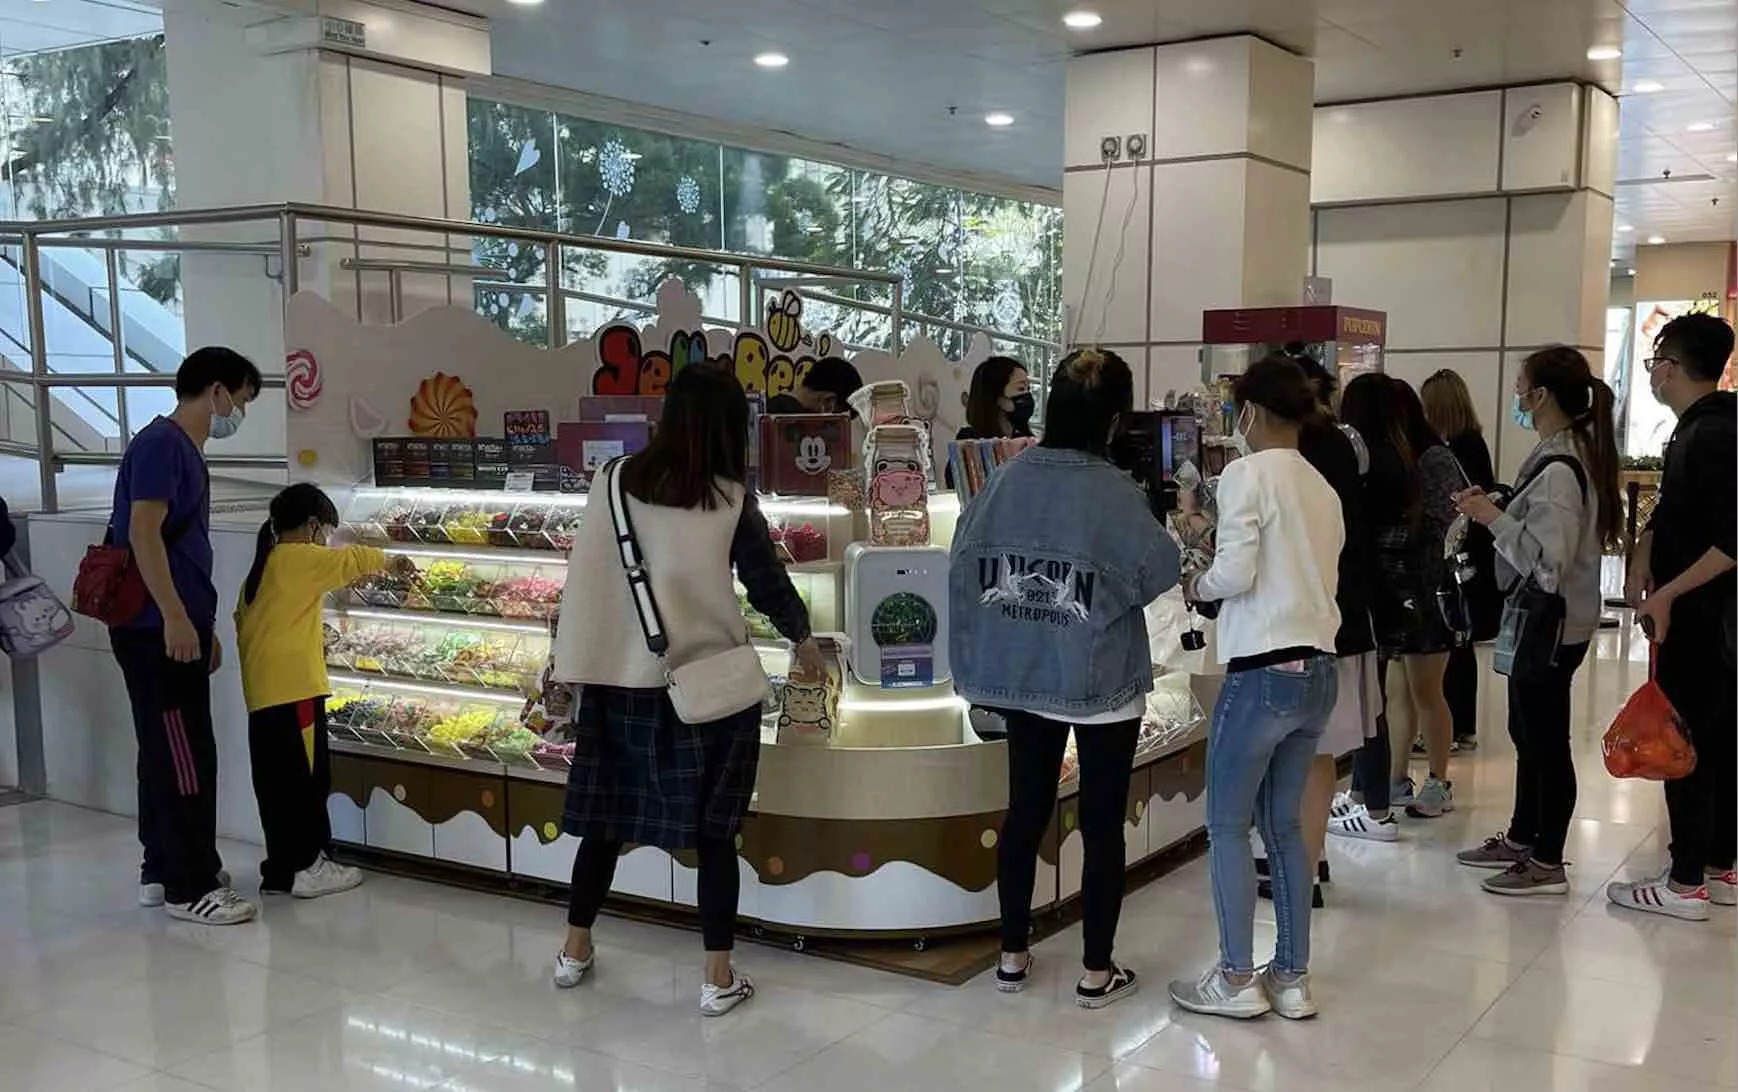 Jellybee's的特許經營香港區加盟店項目8